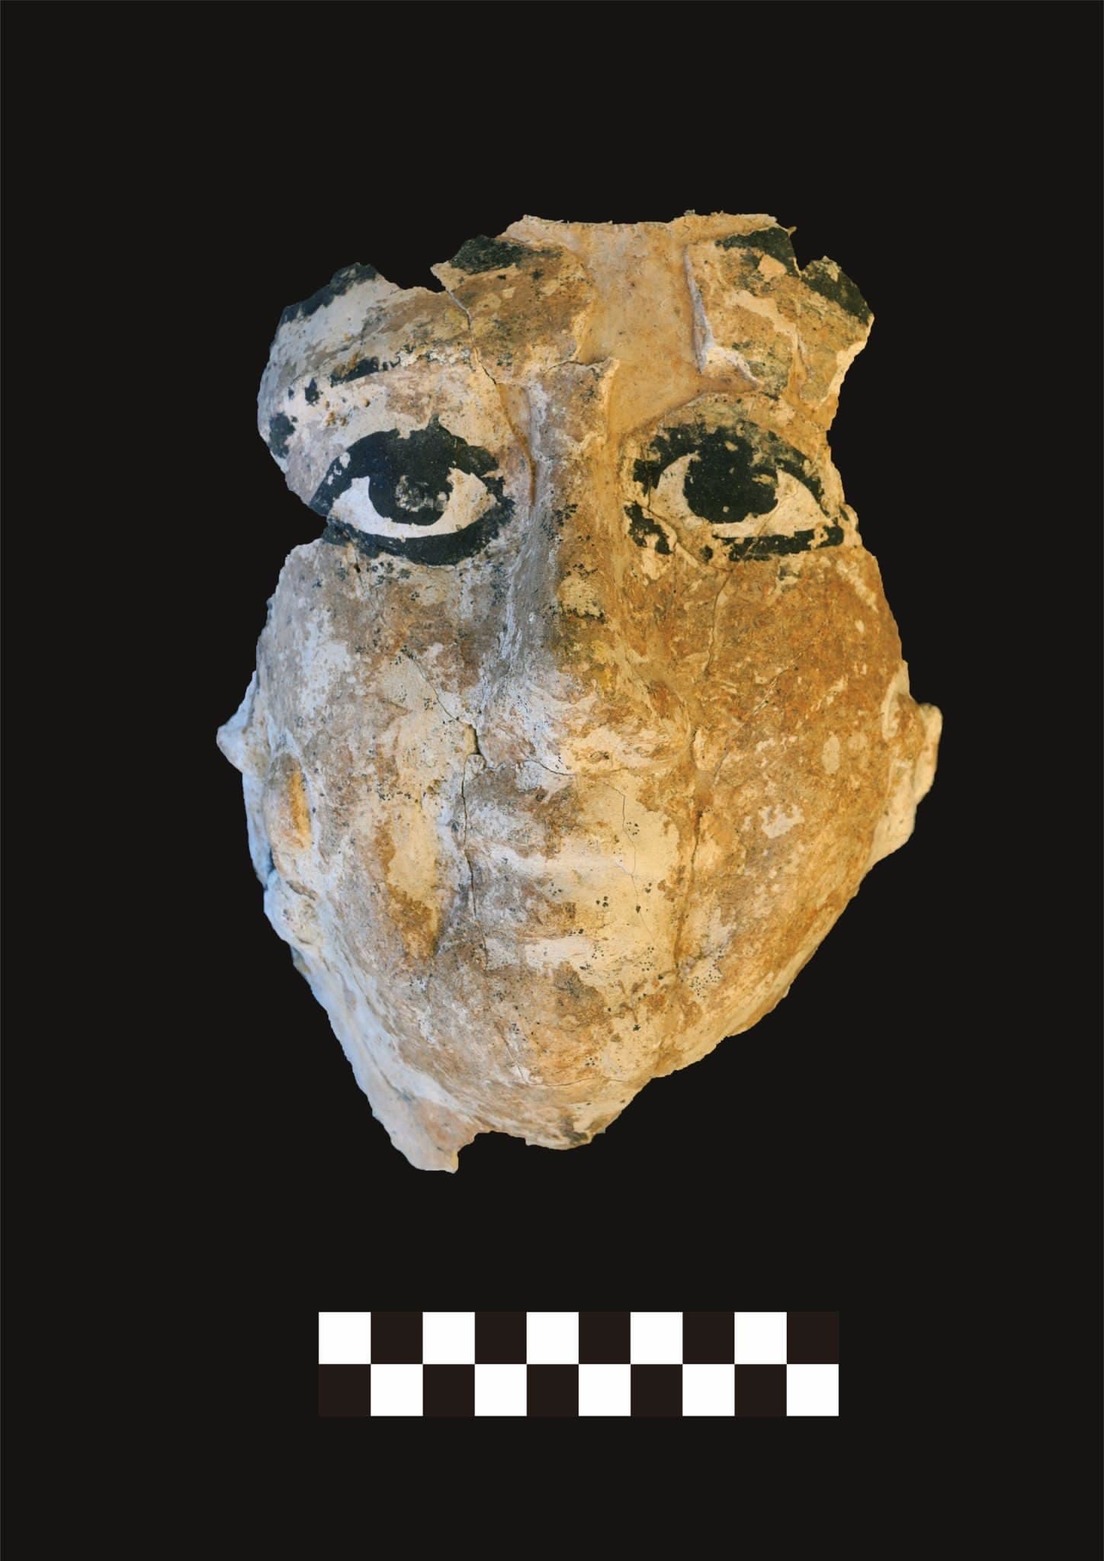 Revelan hallazgos milenarios en Egipto: máscaras de momias y una figura del dios del silencio